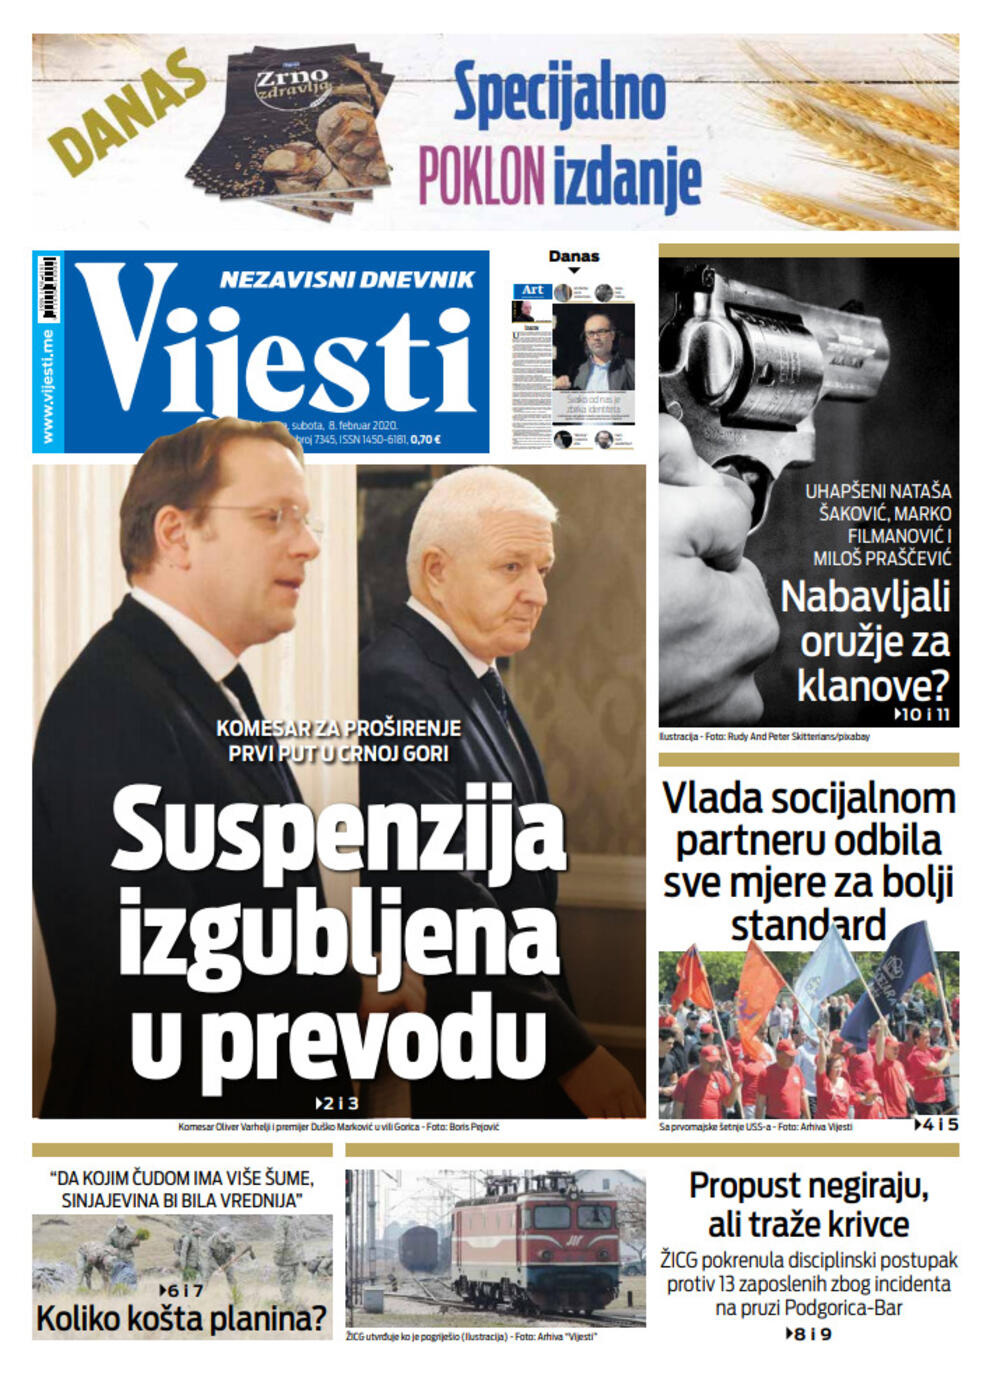 Naslovna strana "Vijesti" za 8. februar 2020., Foto: Vijesti